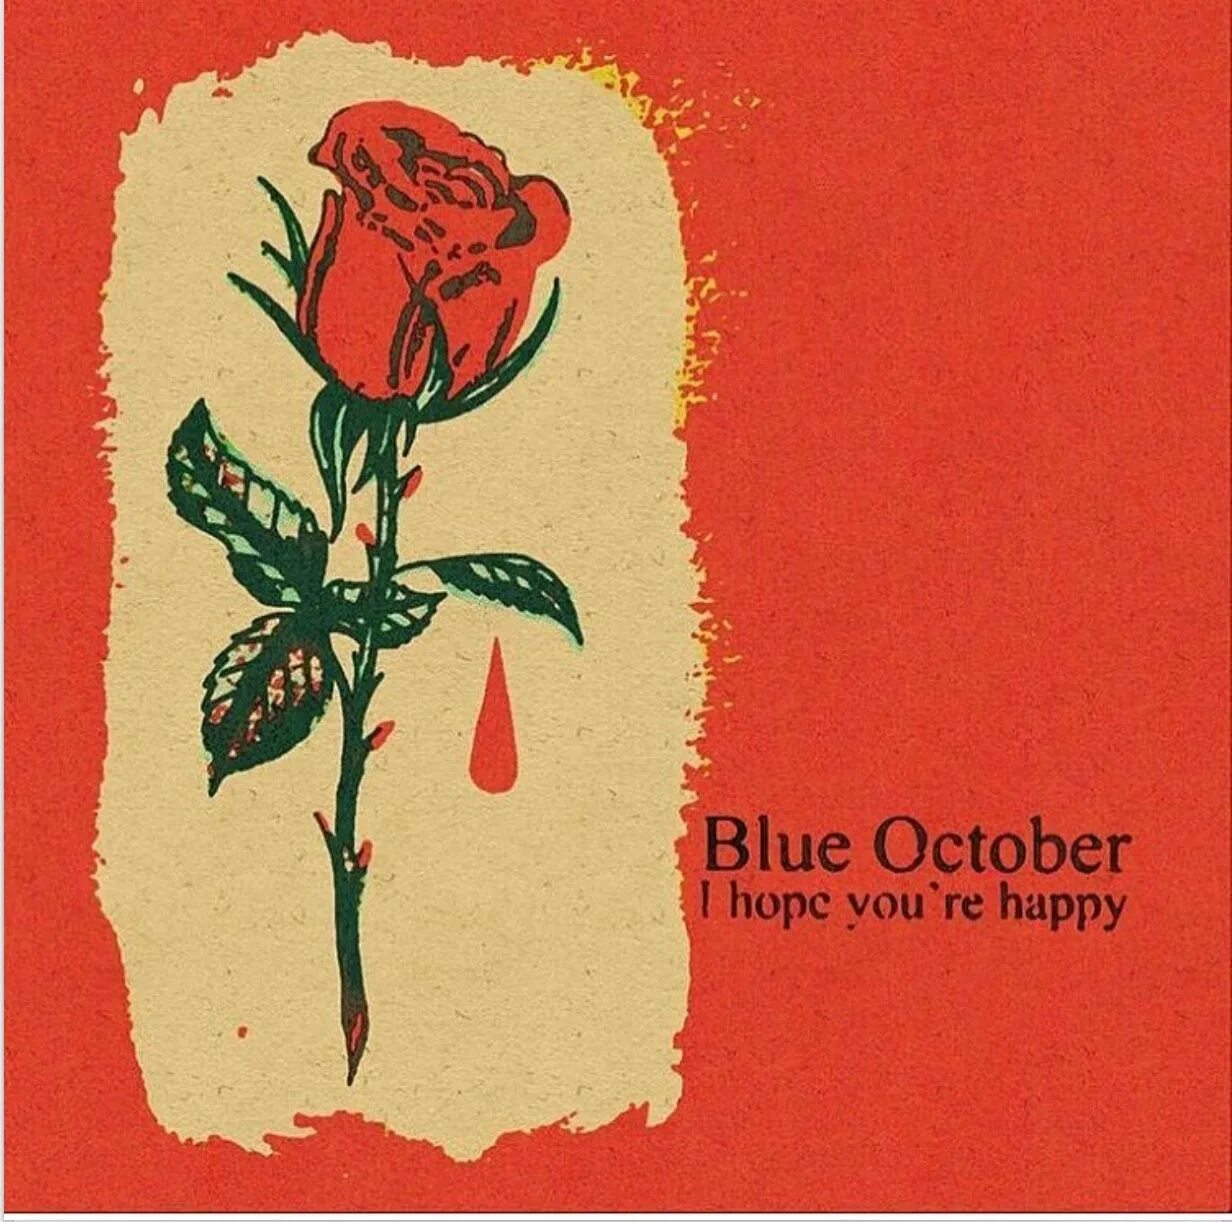 I hope you are happy. Группа Blue October. Blue October логотип. Blue October обложки альбомов. Группа logo Blue October.